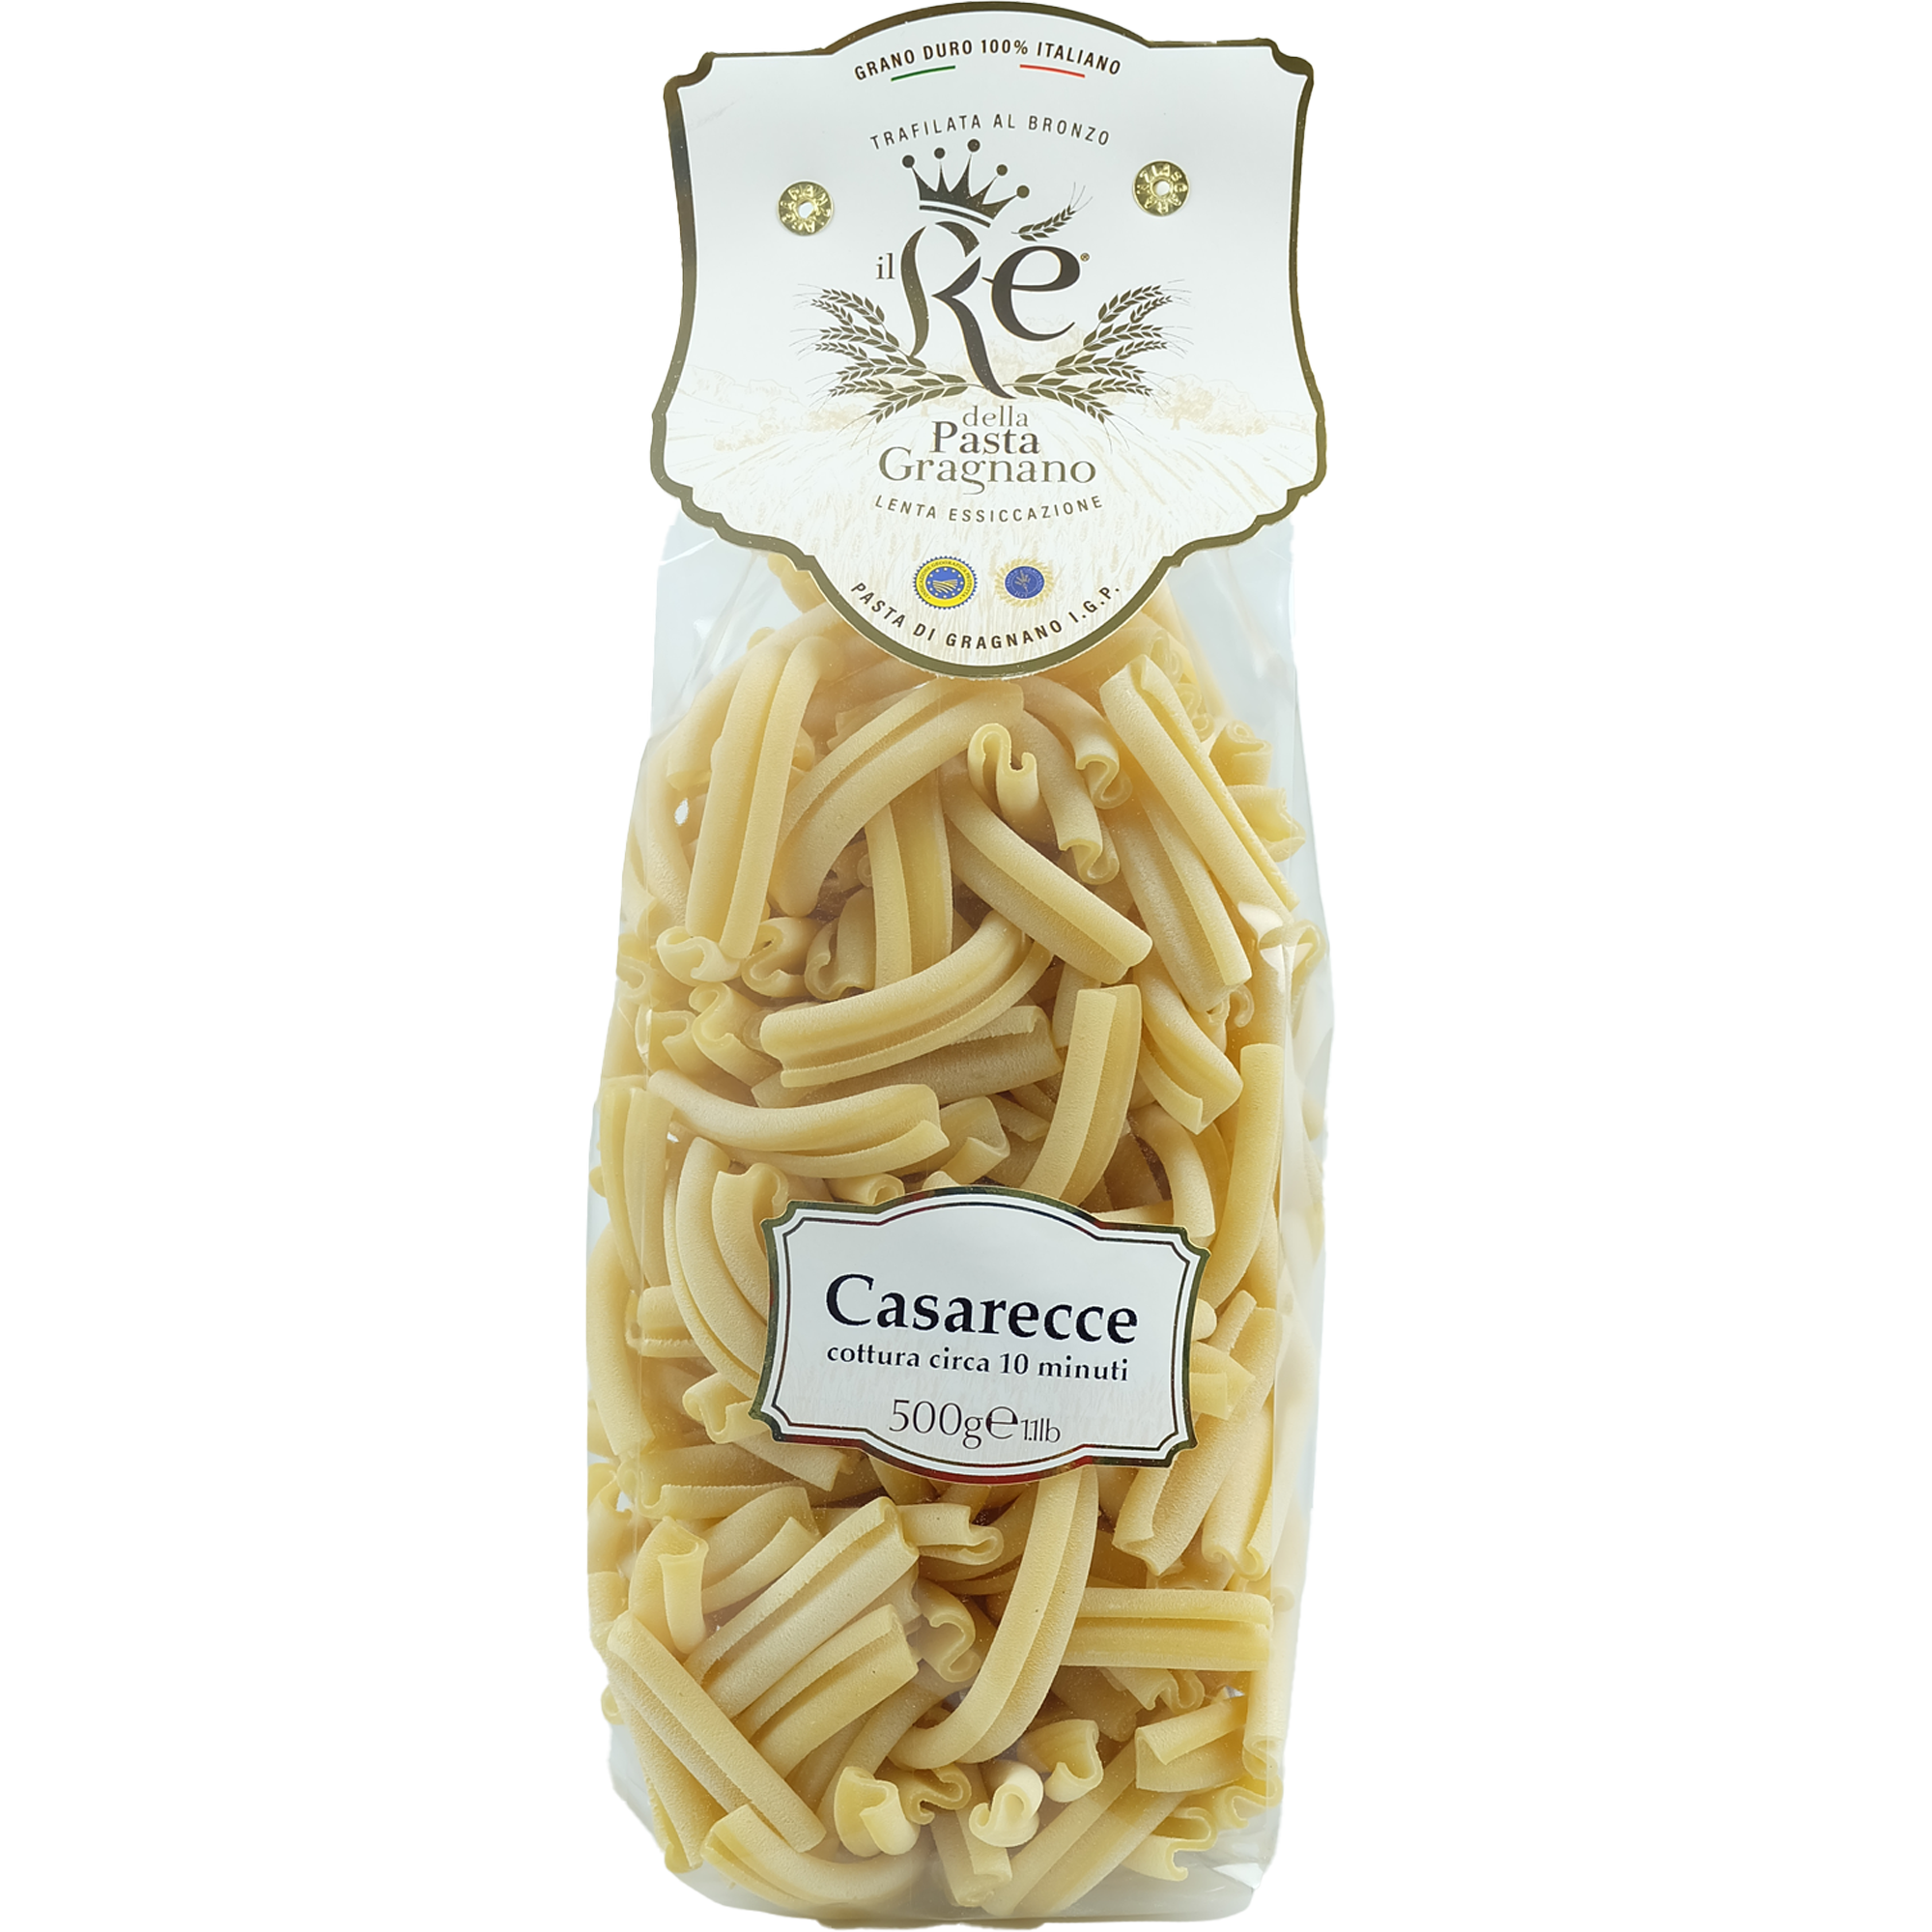 IL RE DELLA PASTA - CASARECCE - GRAGNANO IGP - Jet Italian Deli - JID-DR-IM - Il Re della Pasta - Italian food - Italian grocery - Food delivery - Thailand - Wine - Truffle - Pasta - Cheese